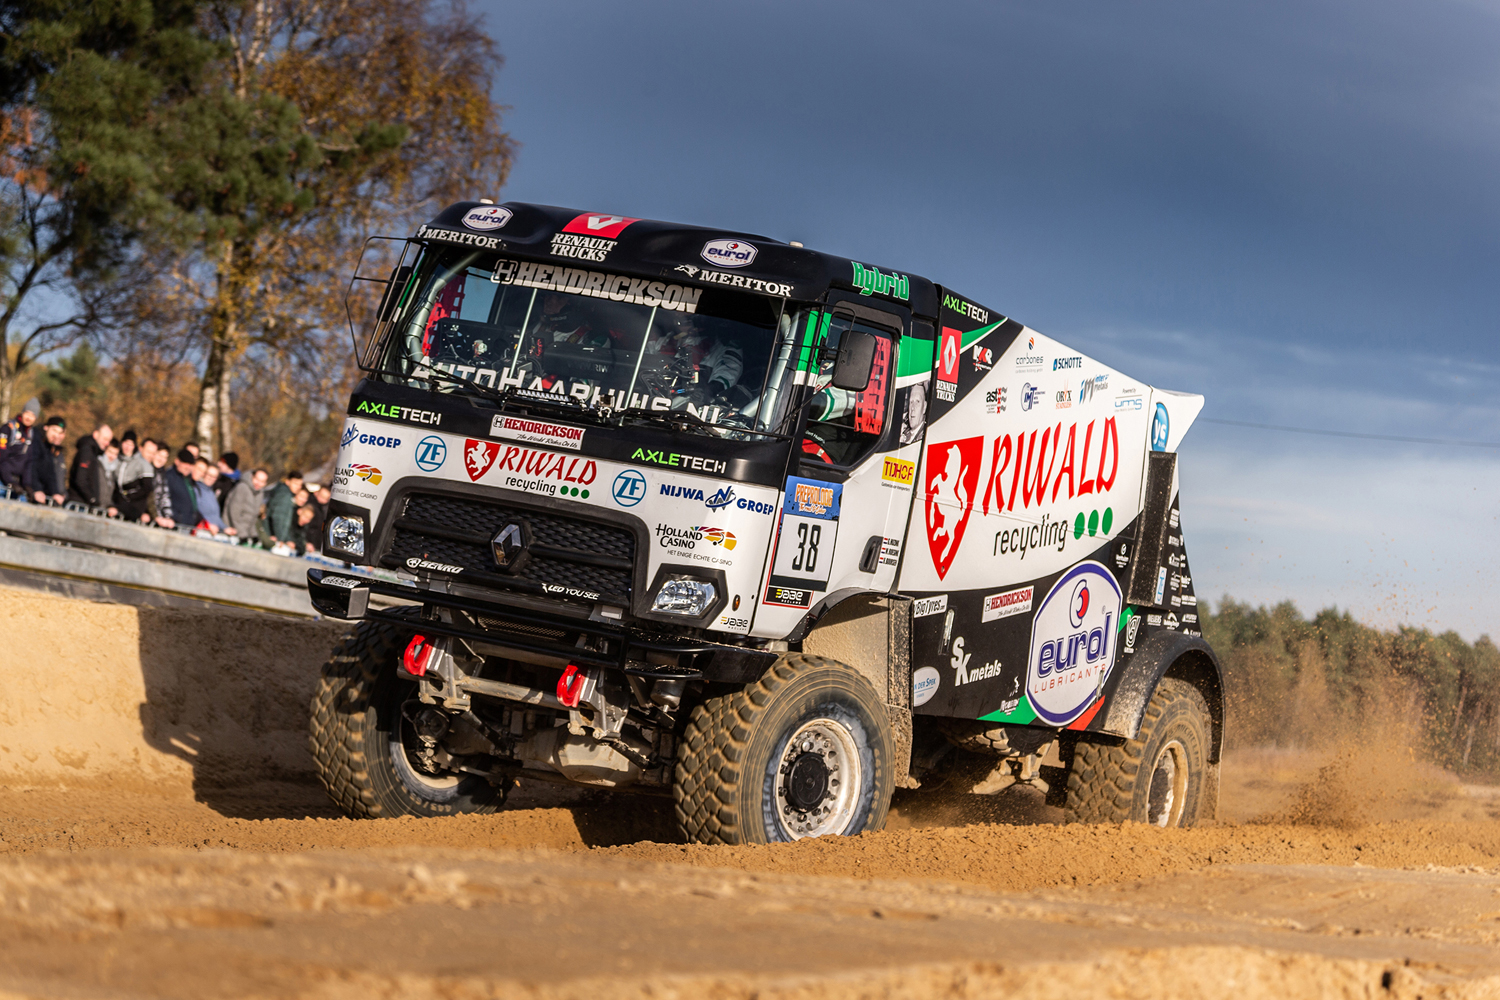 Der Renault C640 von MKR Technology und Riwald Dakar ist der erste Hybrid-Truck in der Geschichte der Rallye Dakar